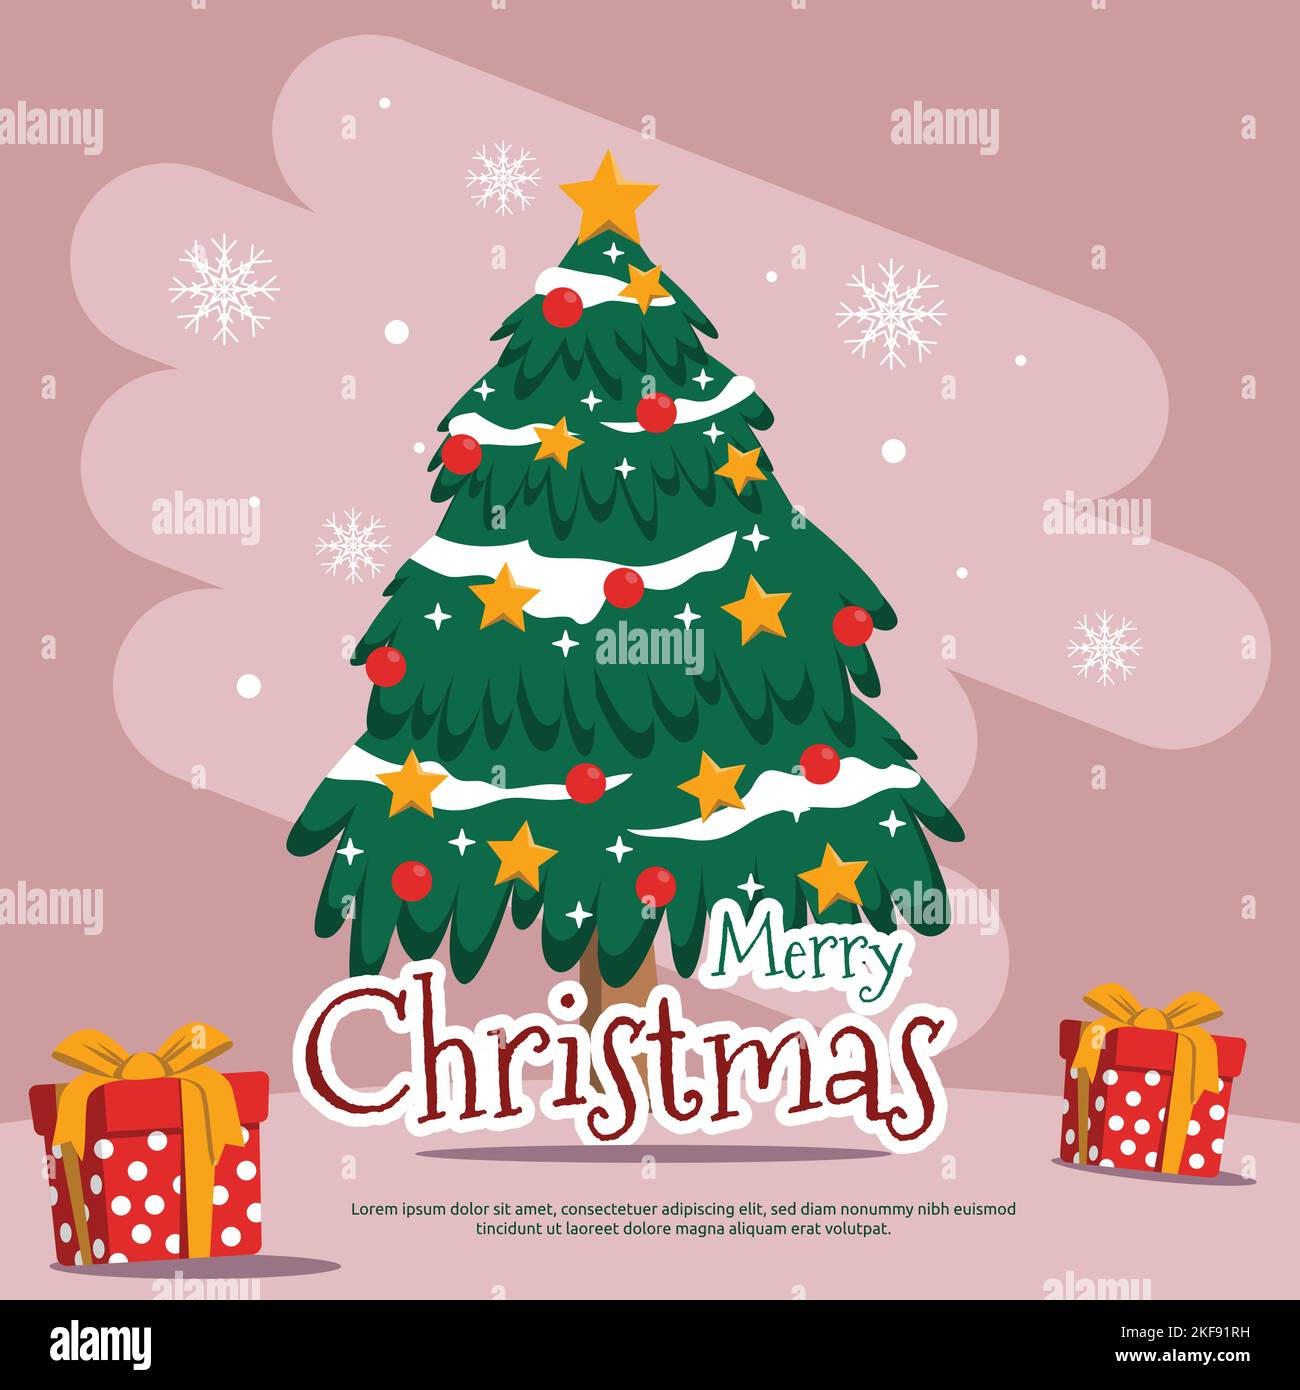 Pine Tree Schneeflocken Frohe Weihnachten Geschenk Grußkarte Design Stock Vektor